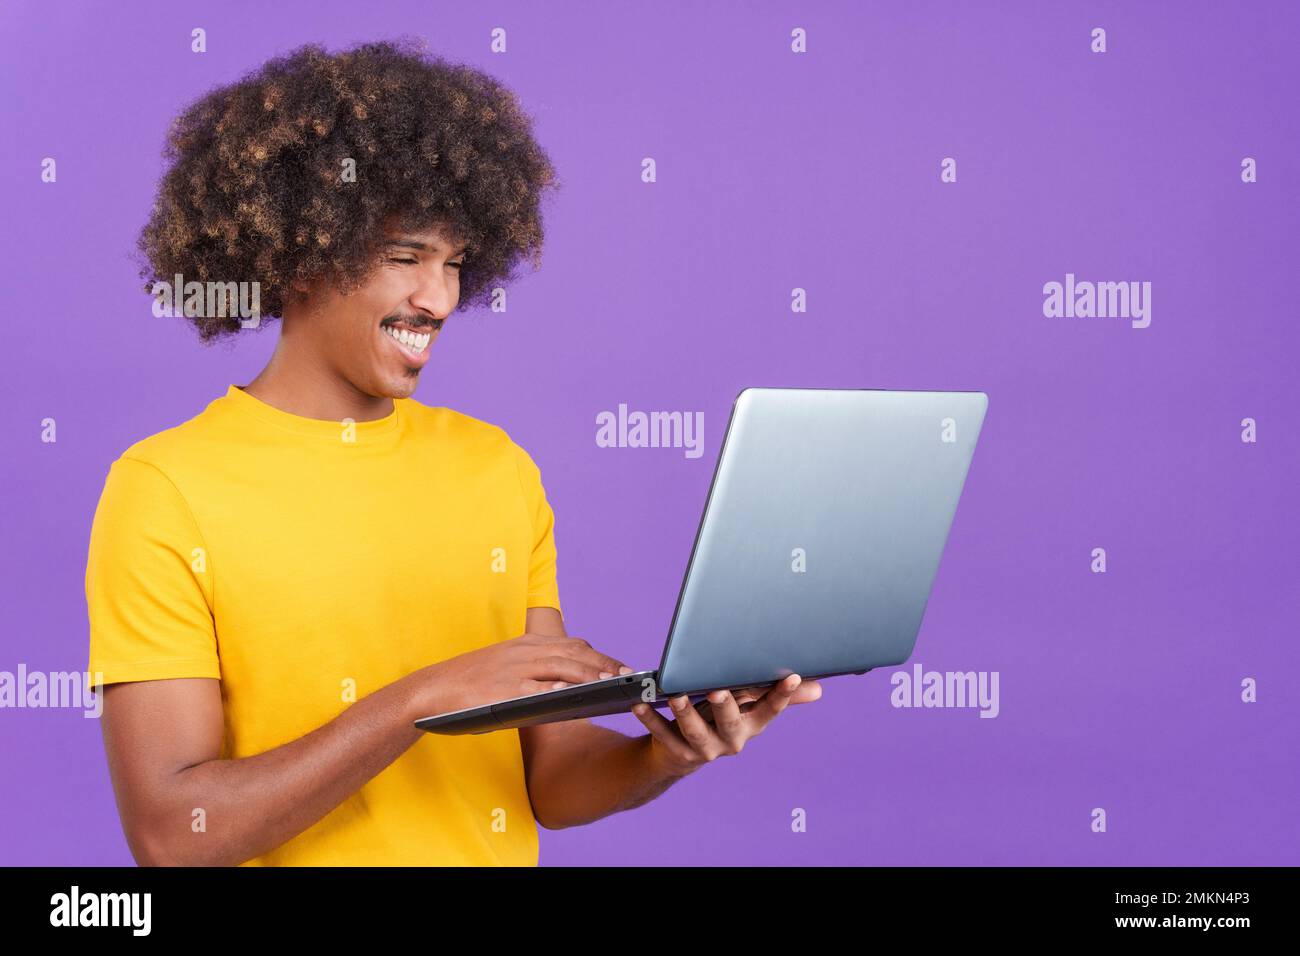 Homme africain heureux debout et utilisant un ordinateur portable Banque D'Images